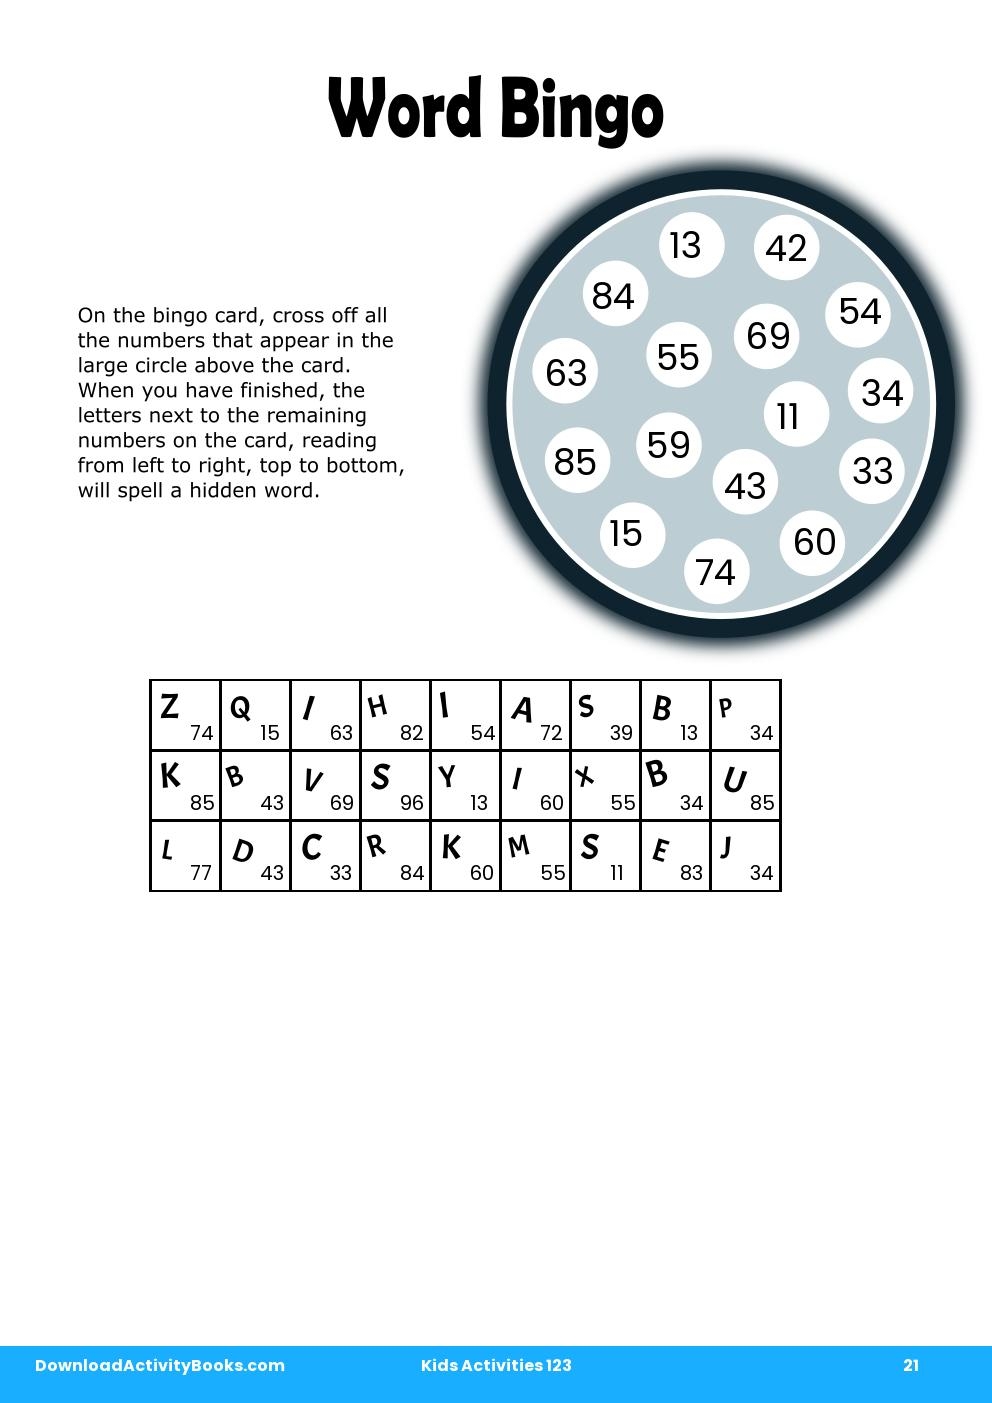 Word Bingo in Kids Activities 123